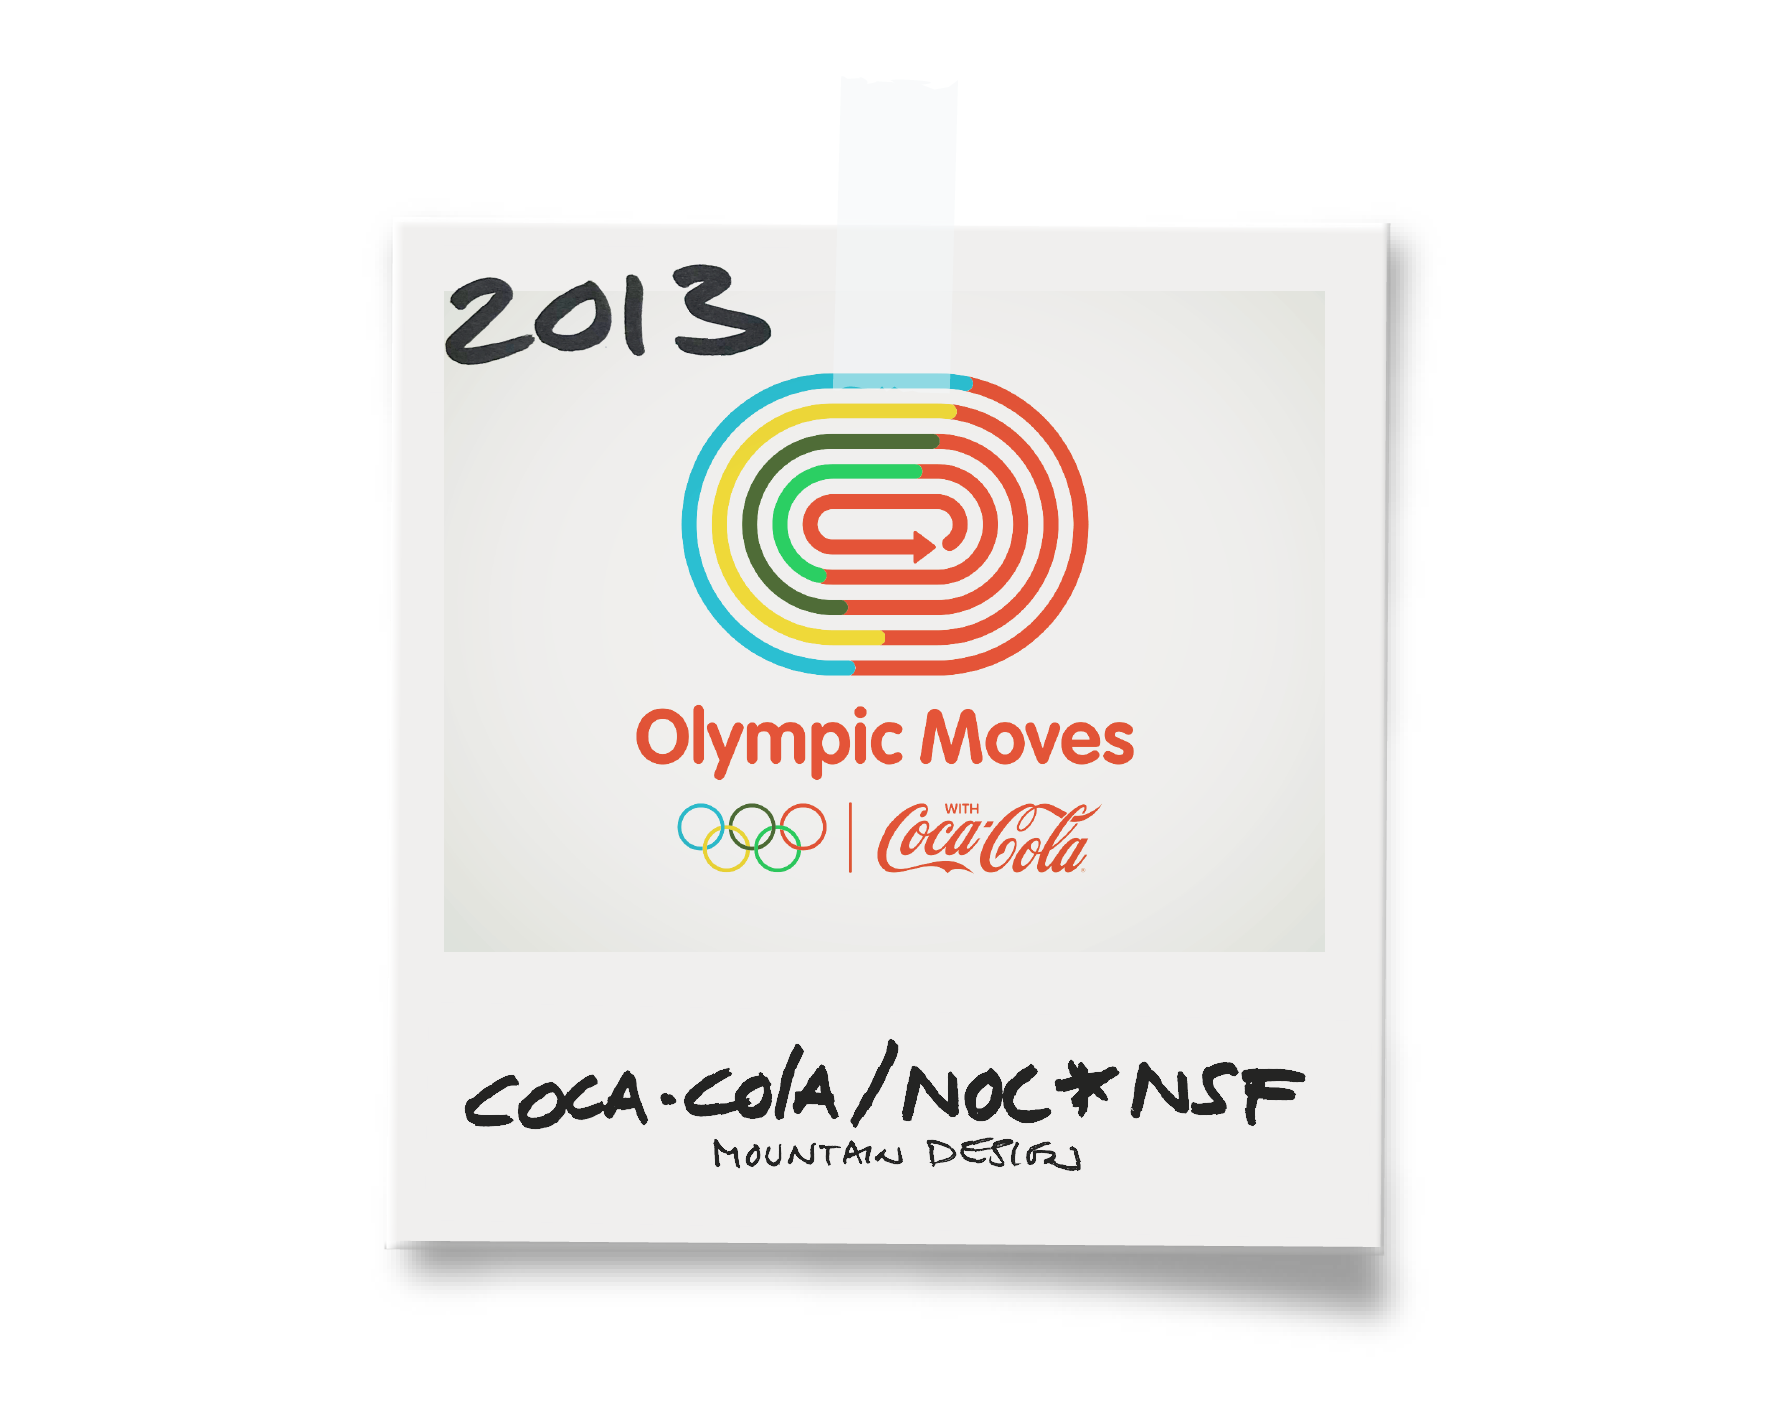 Olympic Moves 2013 op website_Tekengebied 1.png